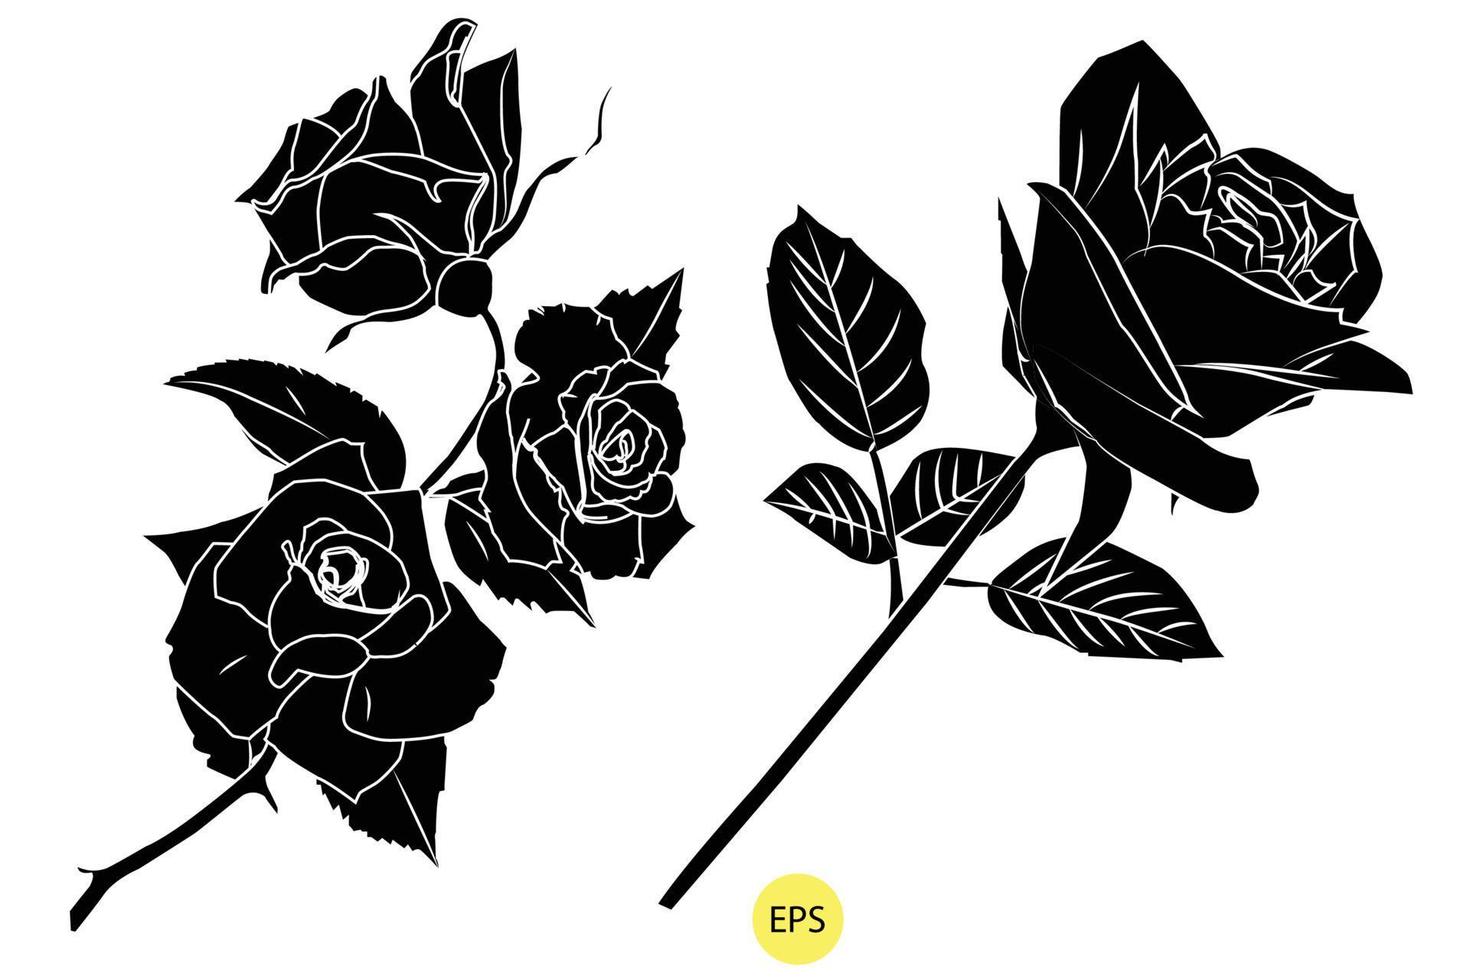 ensemble de silhouettes roses décoratives noires, vecteur silhouettes noires de fleurs isolées sur fond blanc.